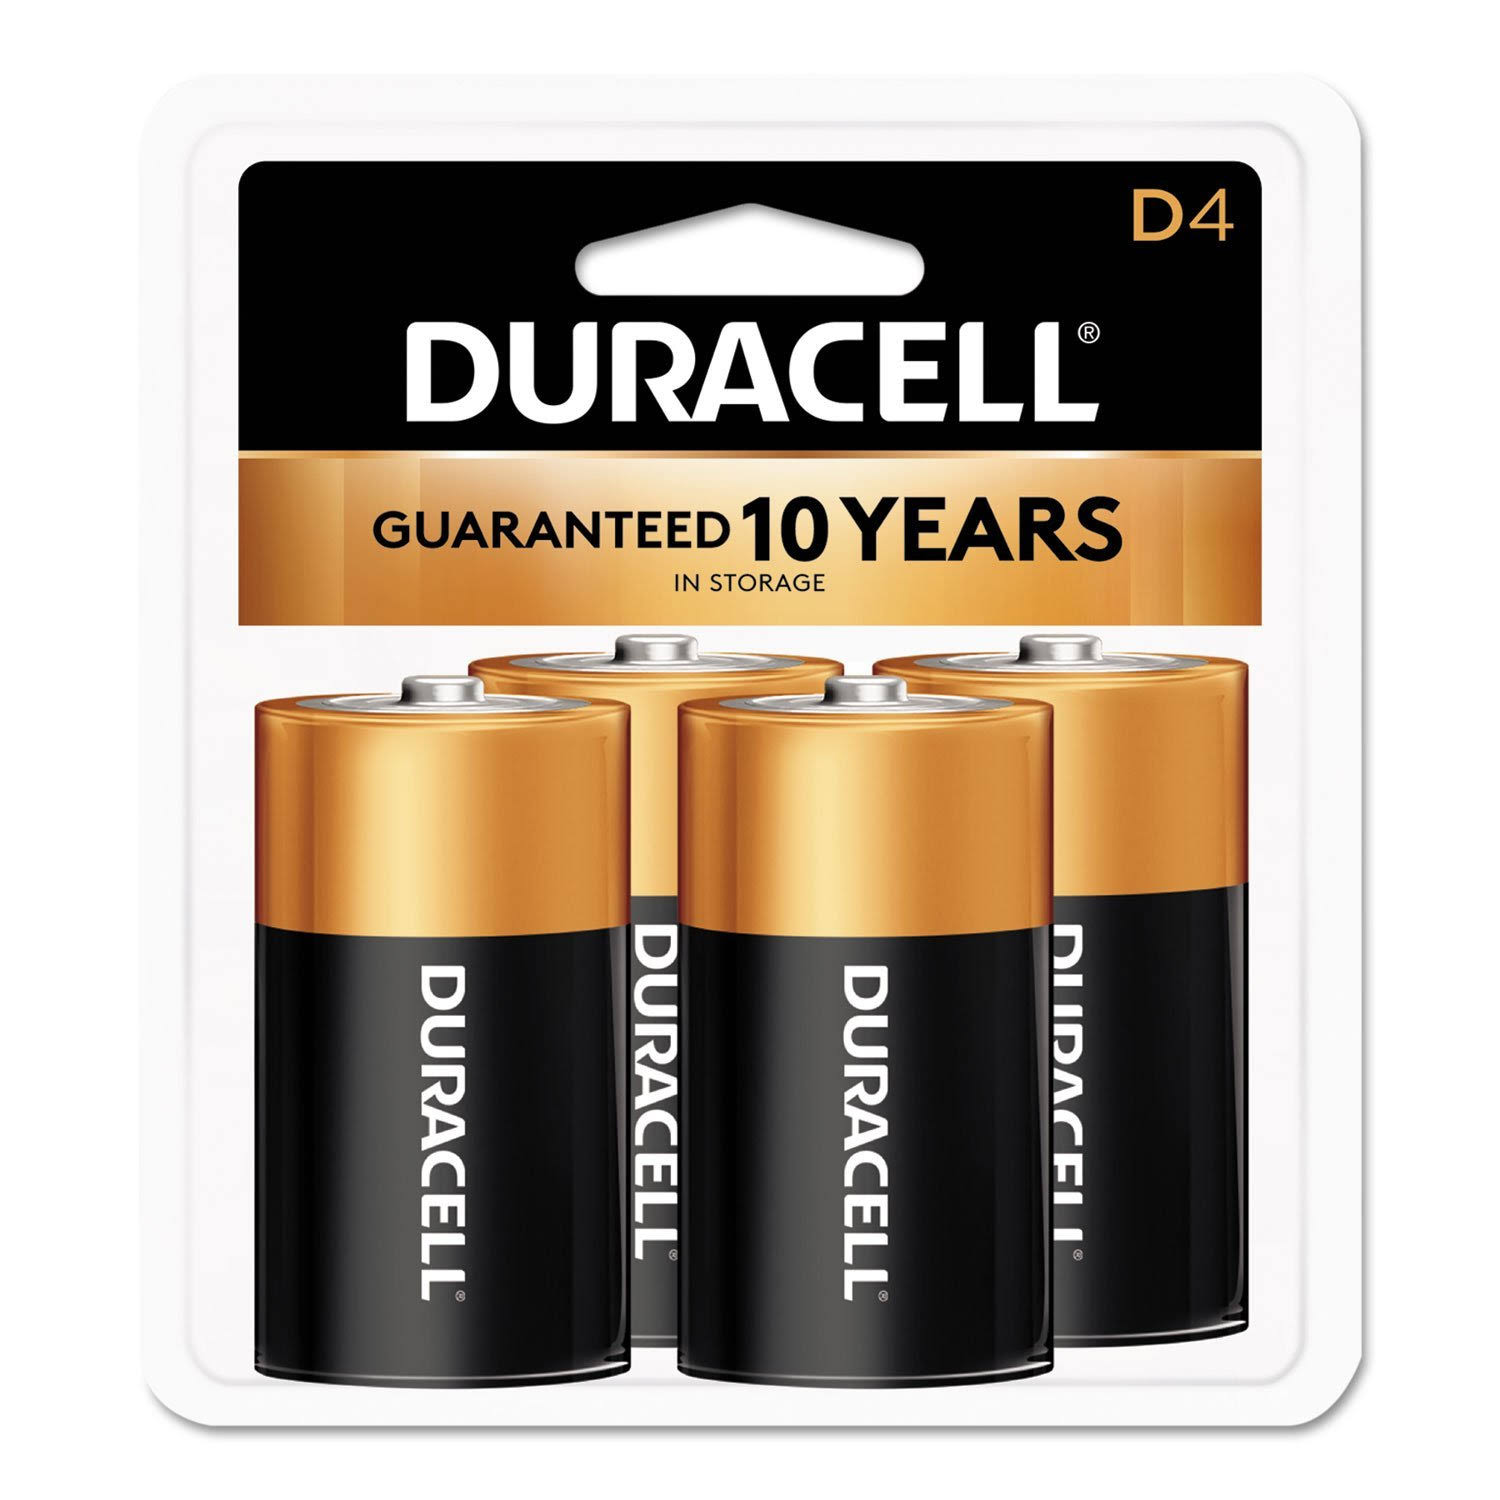 Duracell Alkaline D Batteries - 4 pack